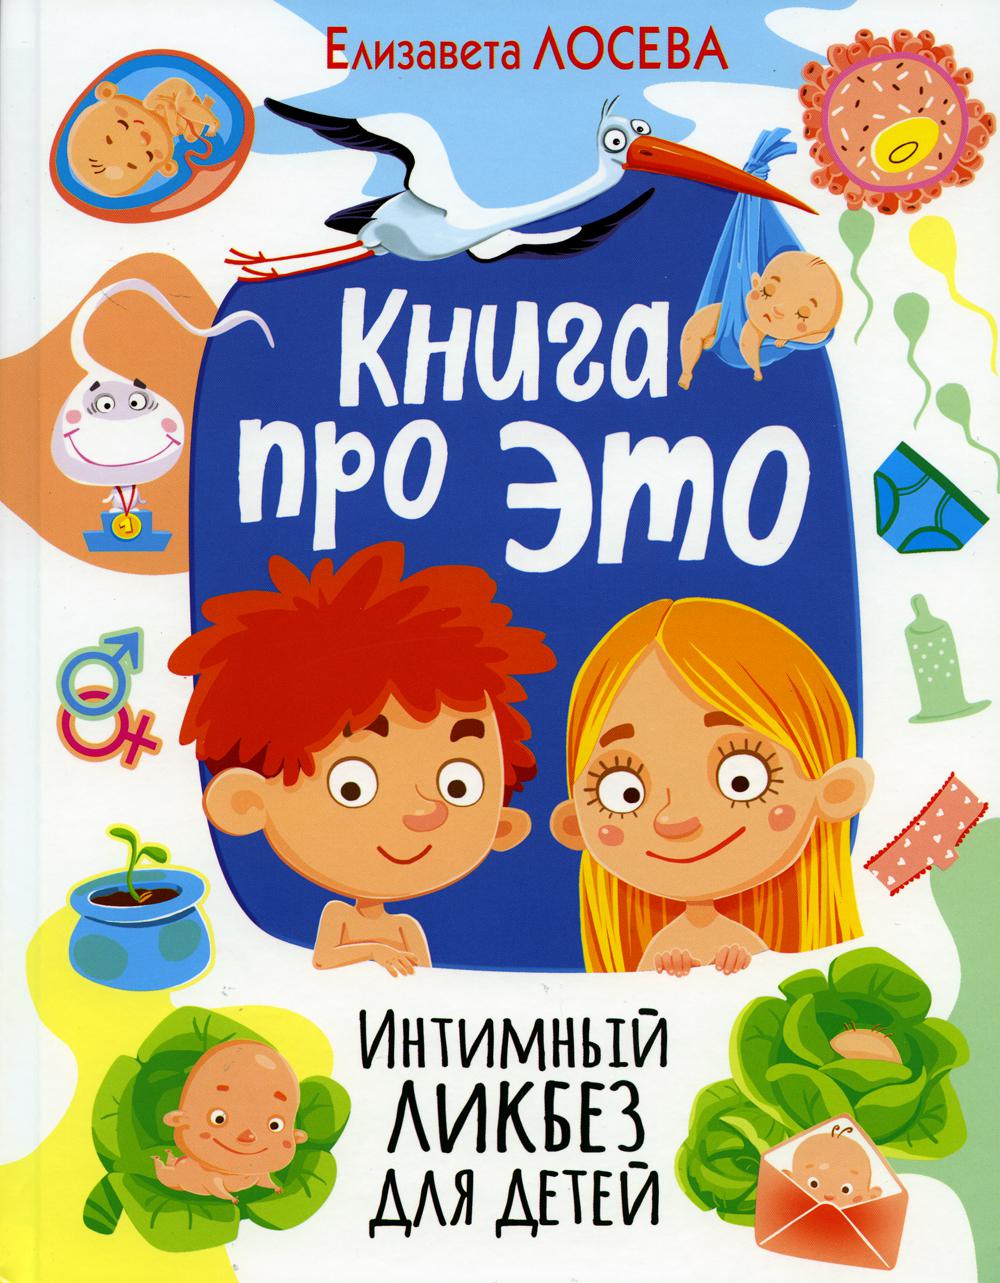 7 детских книг, которые помогут приучить ребенка к горшку